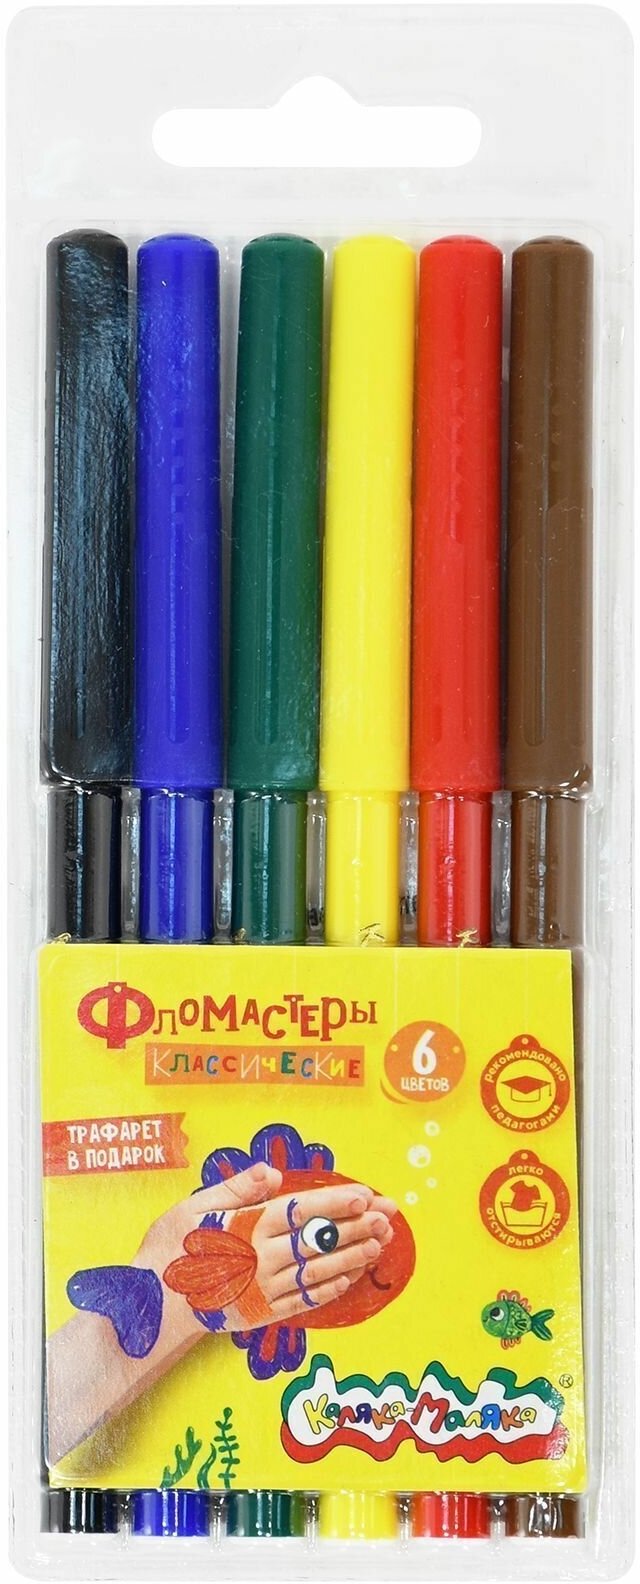 Каляка-Маляка набор фломастеров, 6 шт, ФКМ06, разноцветный